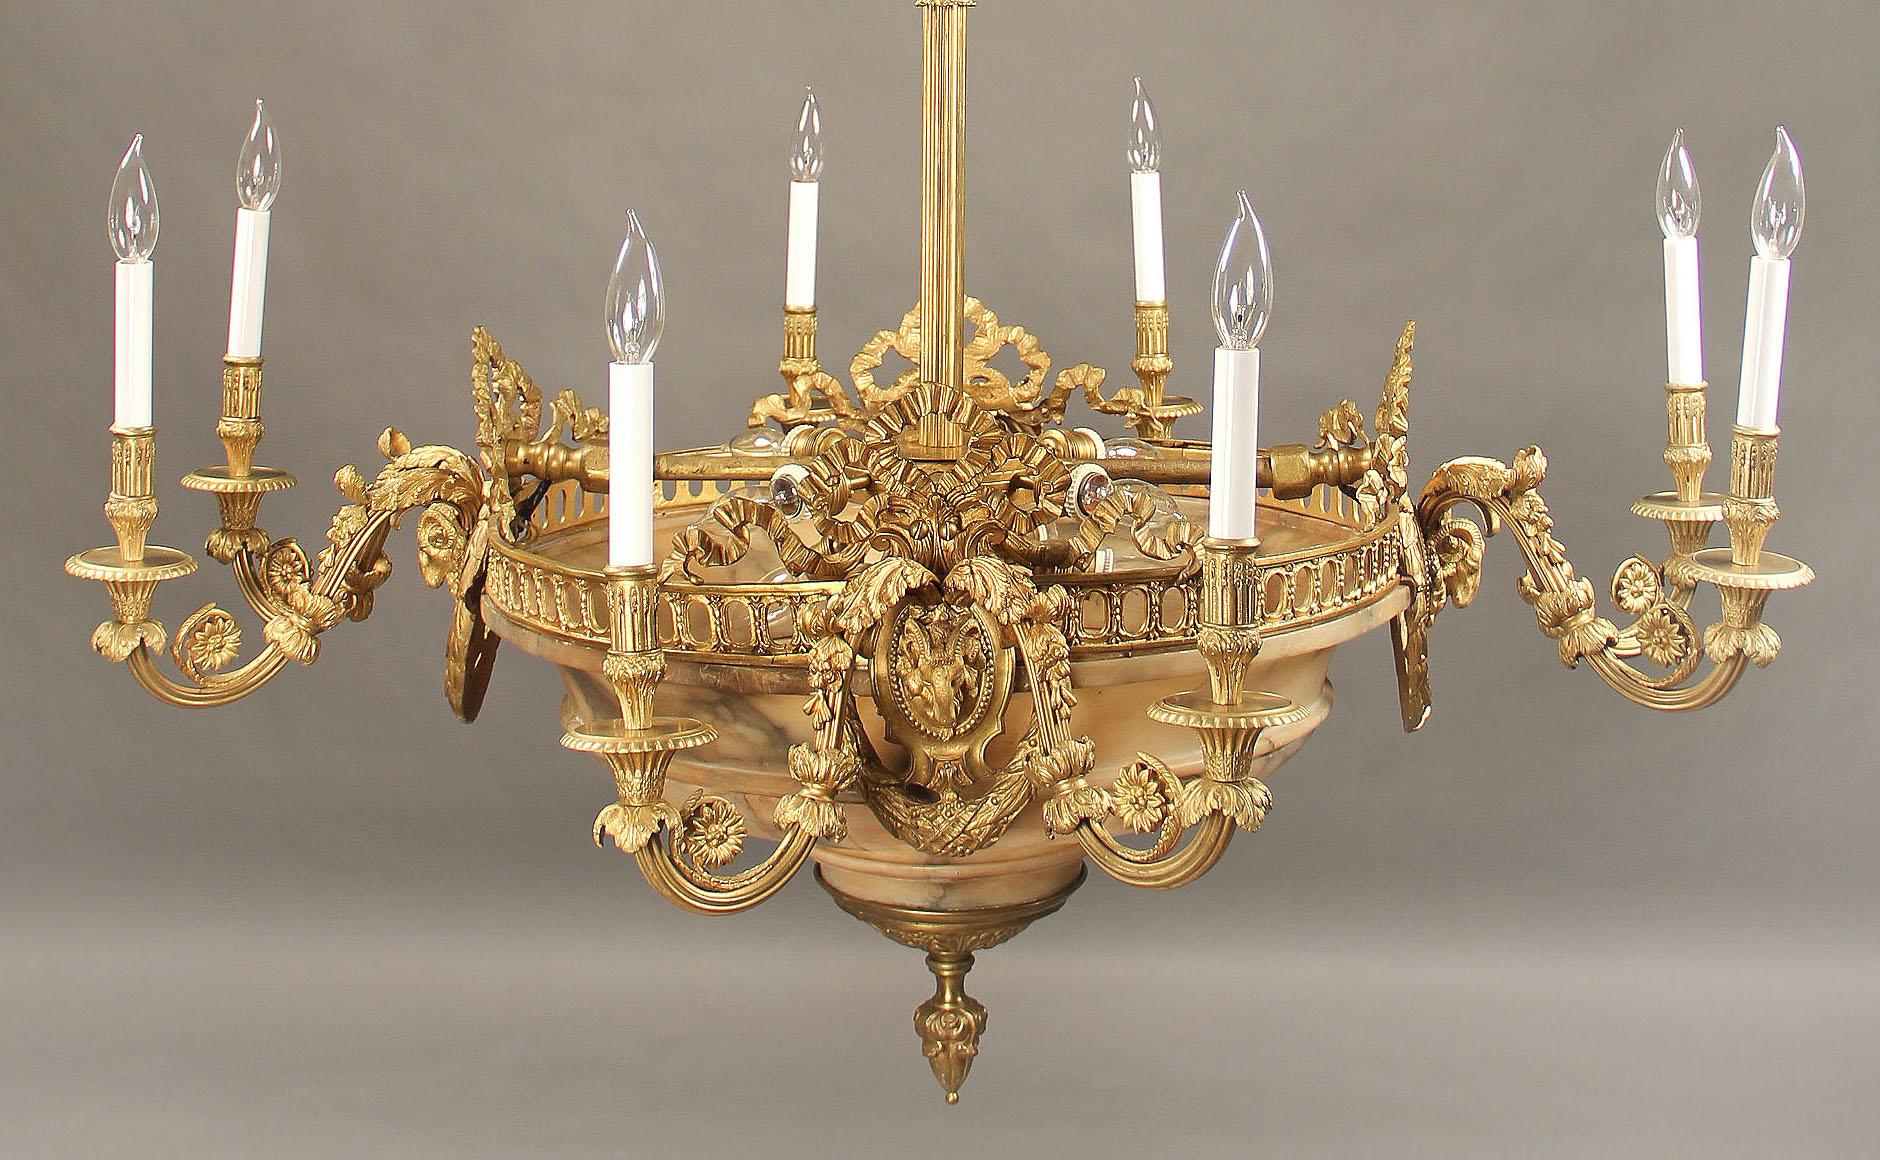 16th century chandelier